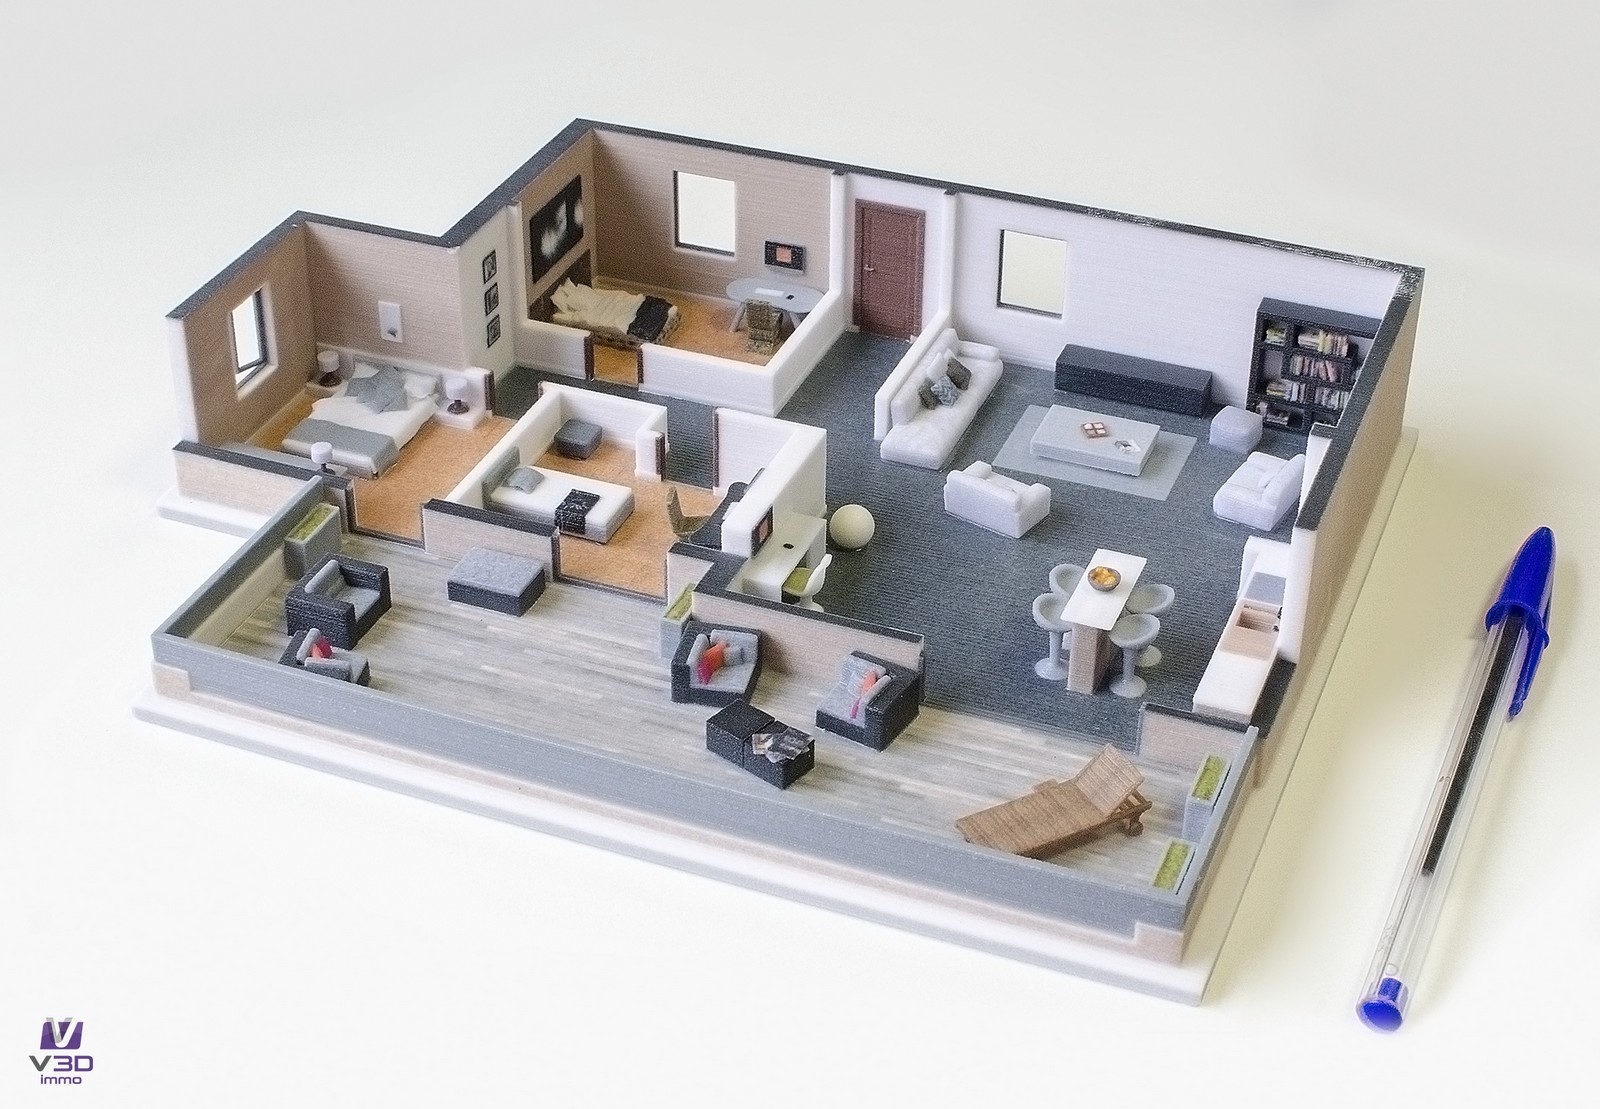 La maquette imprimée en 3D, un complément idéal au plan papier pour commercialiser des programmes immobilier VEFA